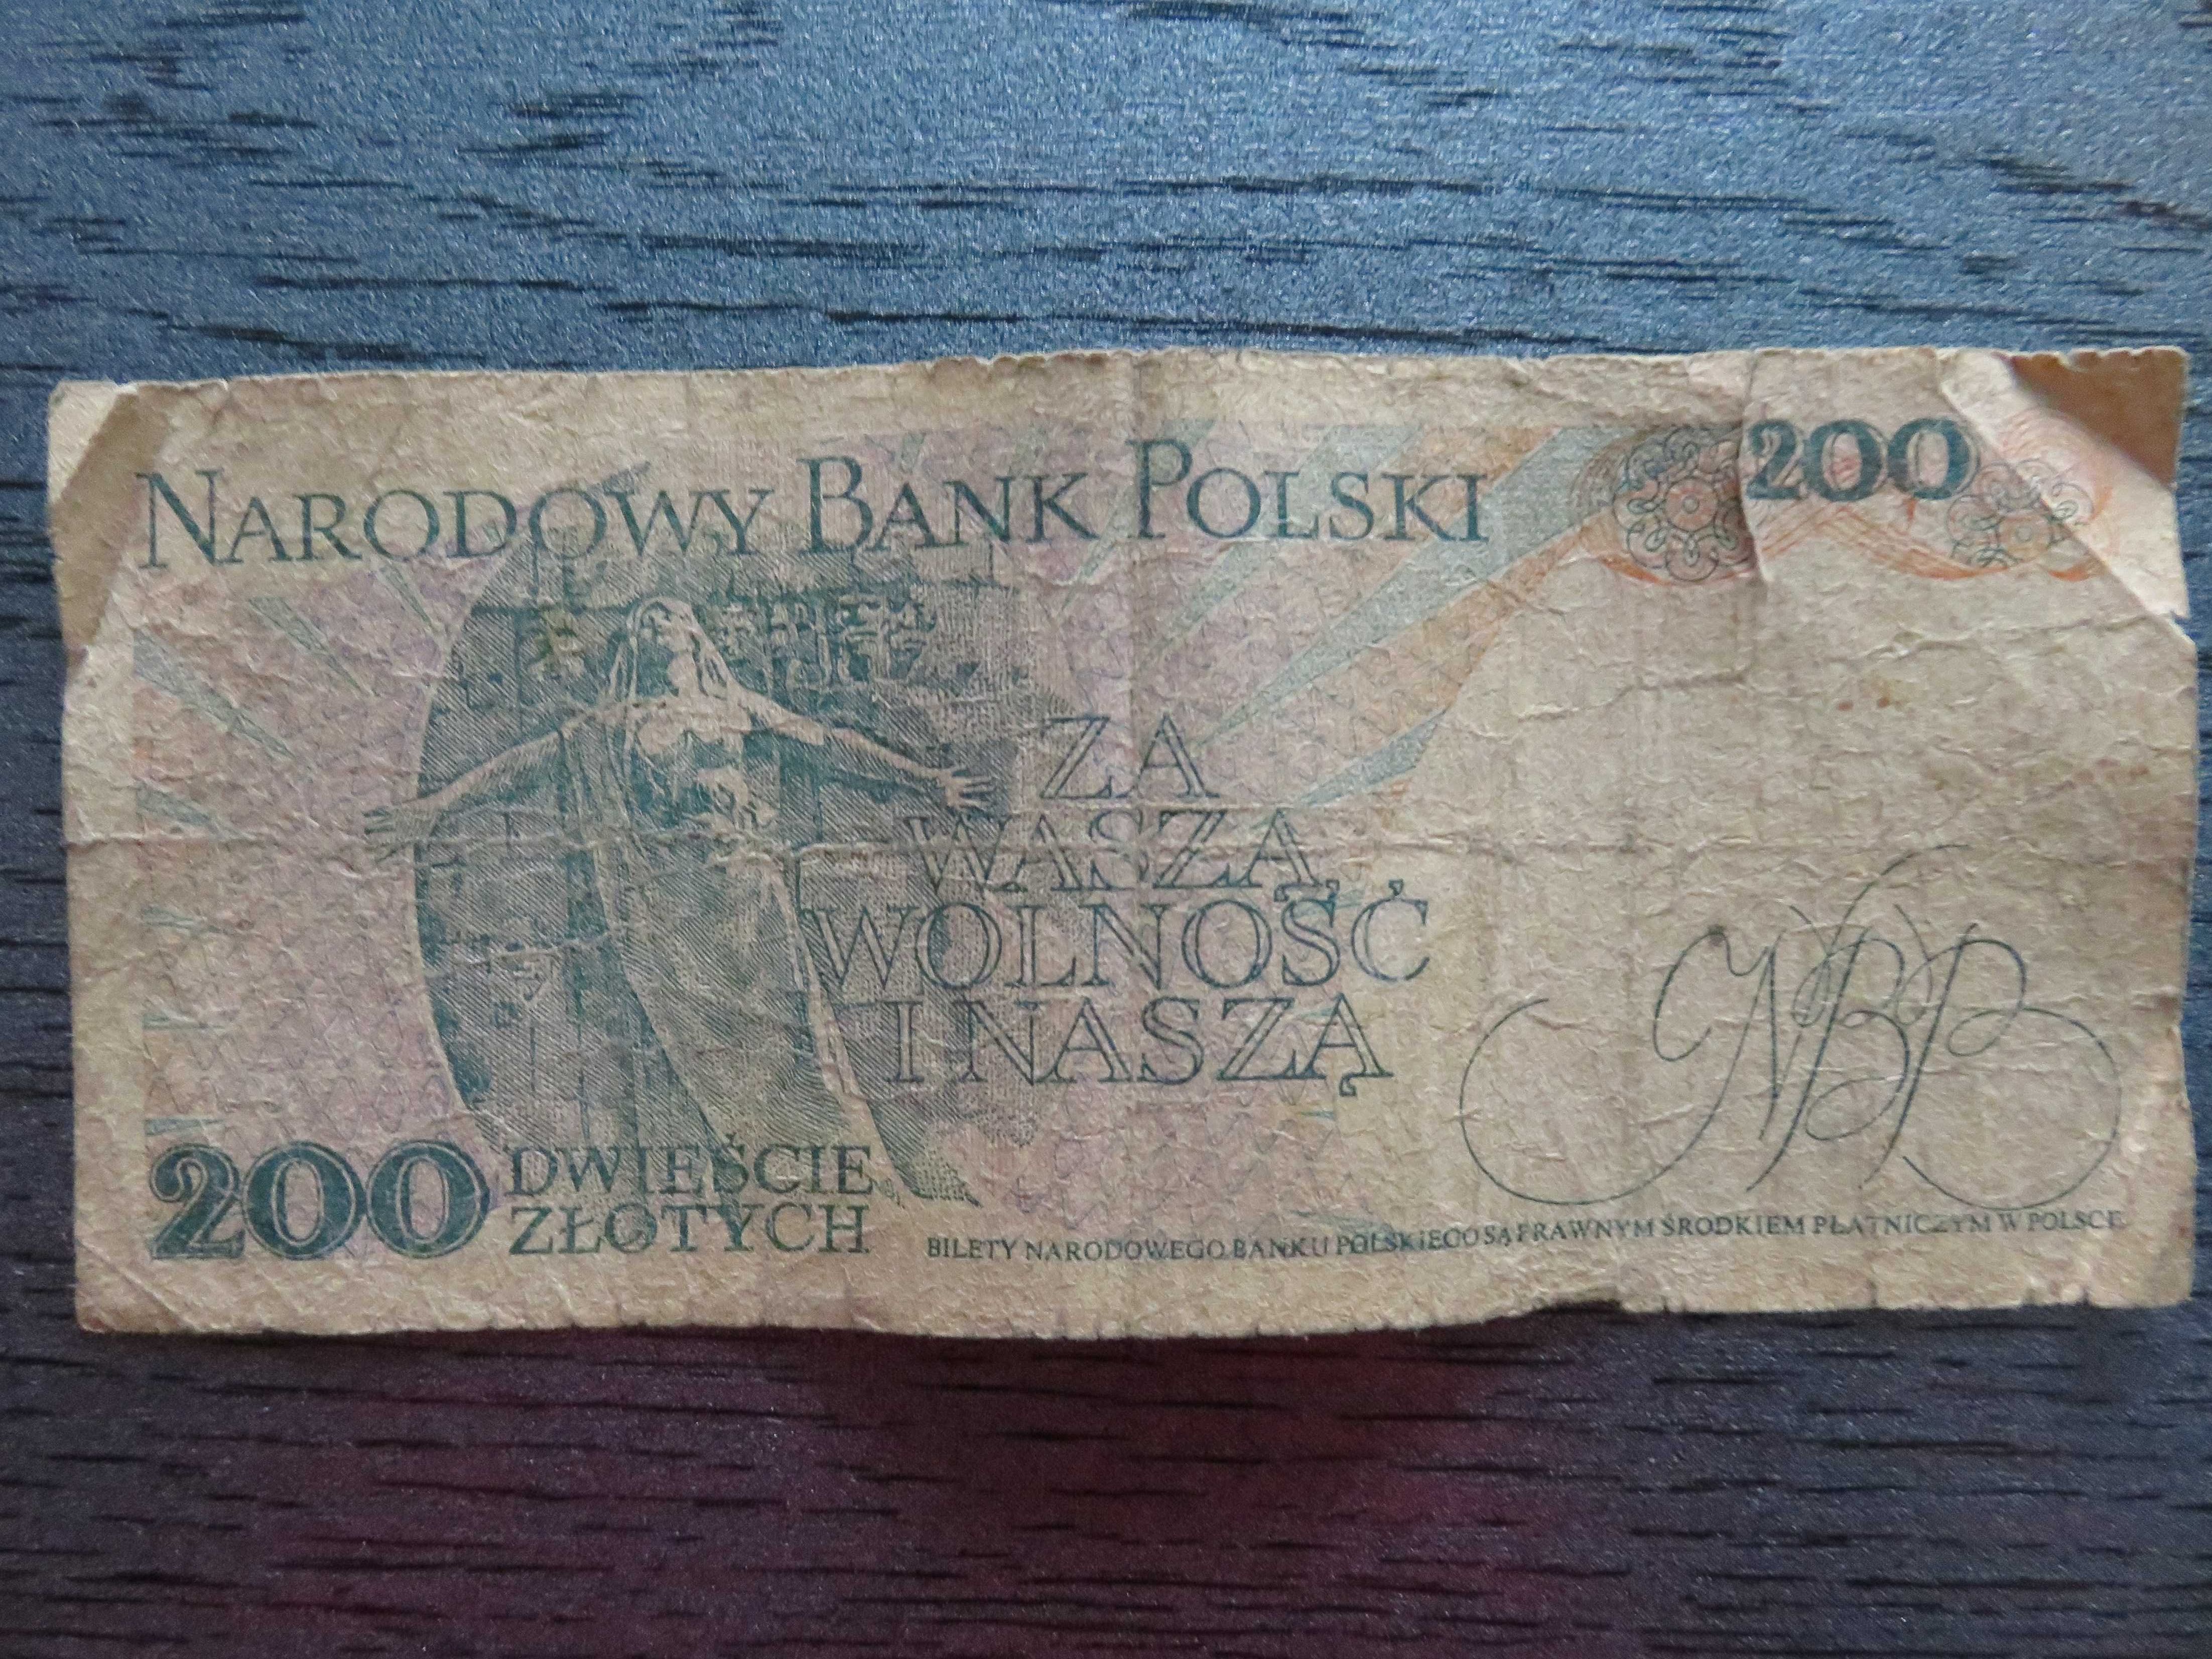 Oferuję kolekcjonerskie banknoty PRL 200 zł w idealnym stanie! Okazja!